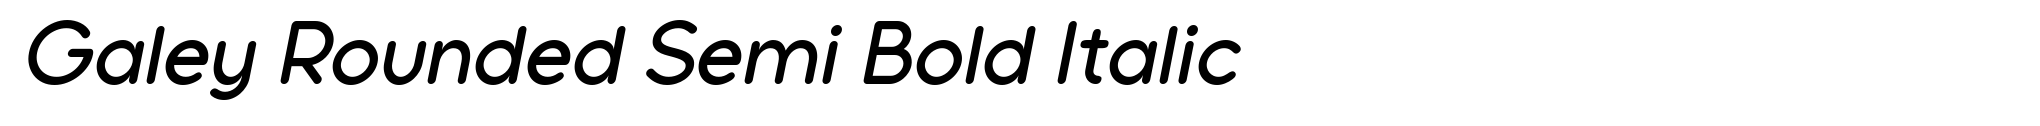 Galey Rounded Semi Bold Italic image